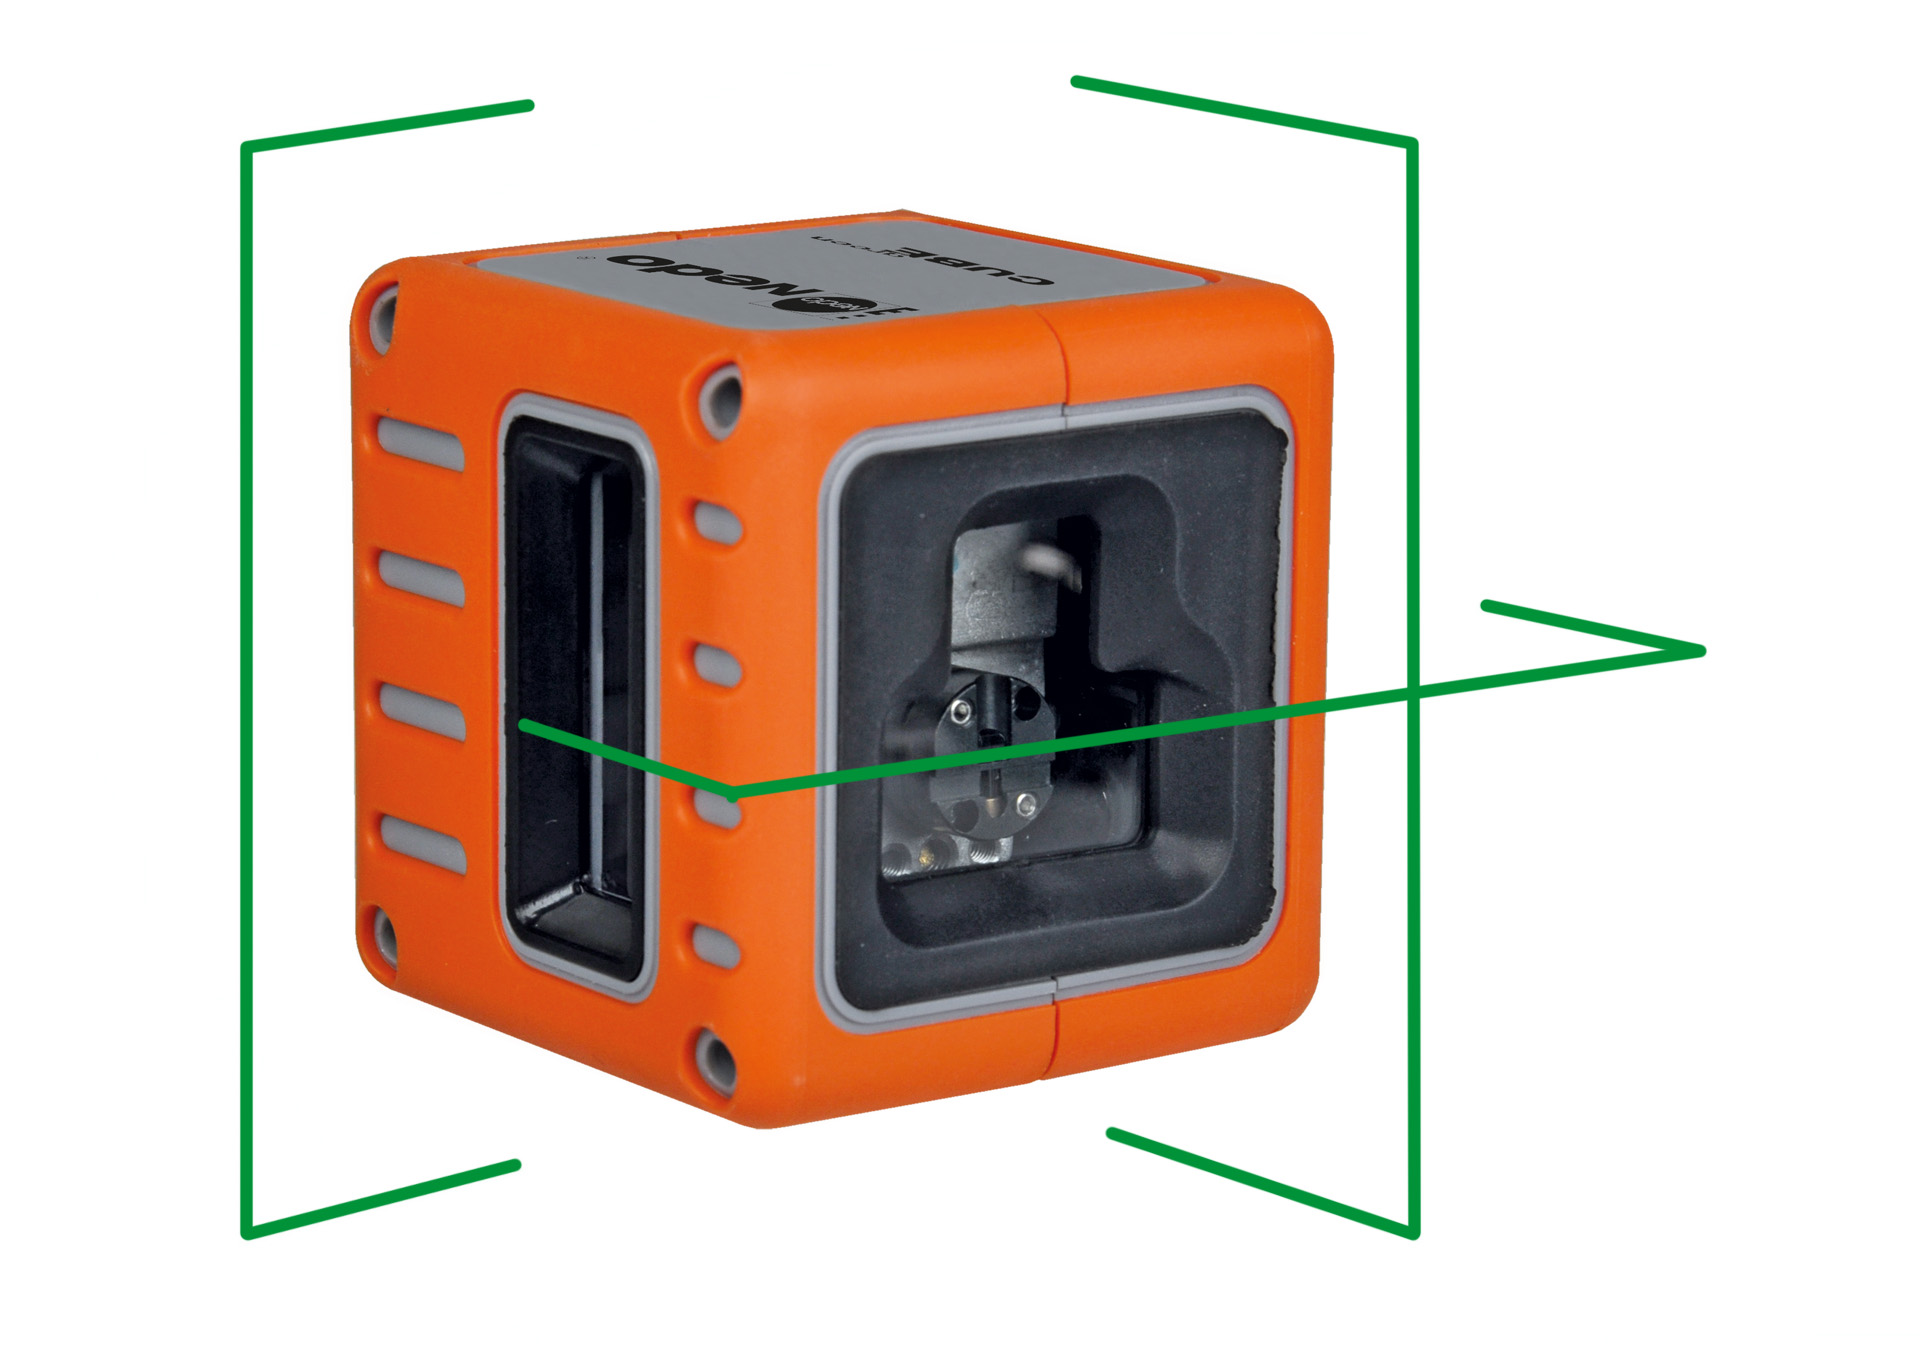 CUBE green - Der universelle Multilinien-Laser für die Werkzeugkiste